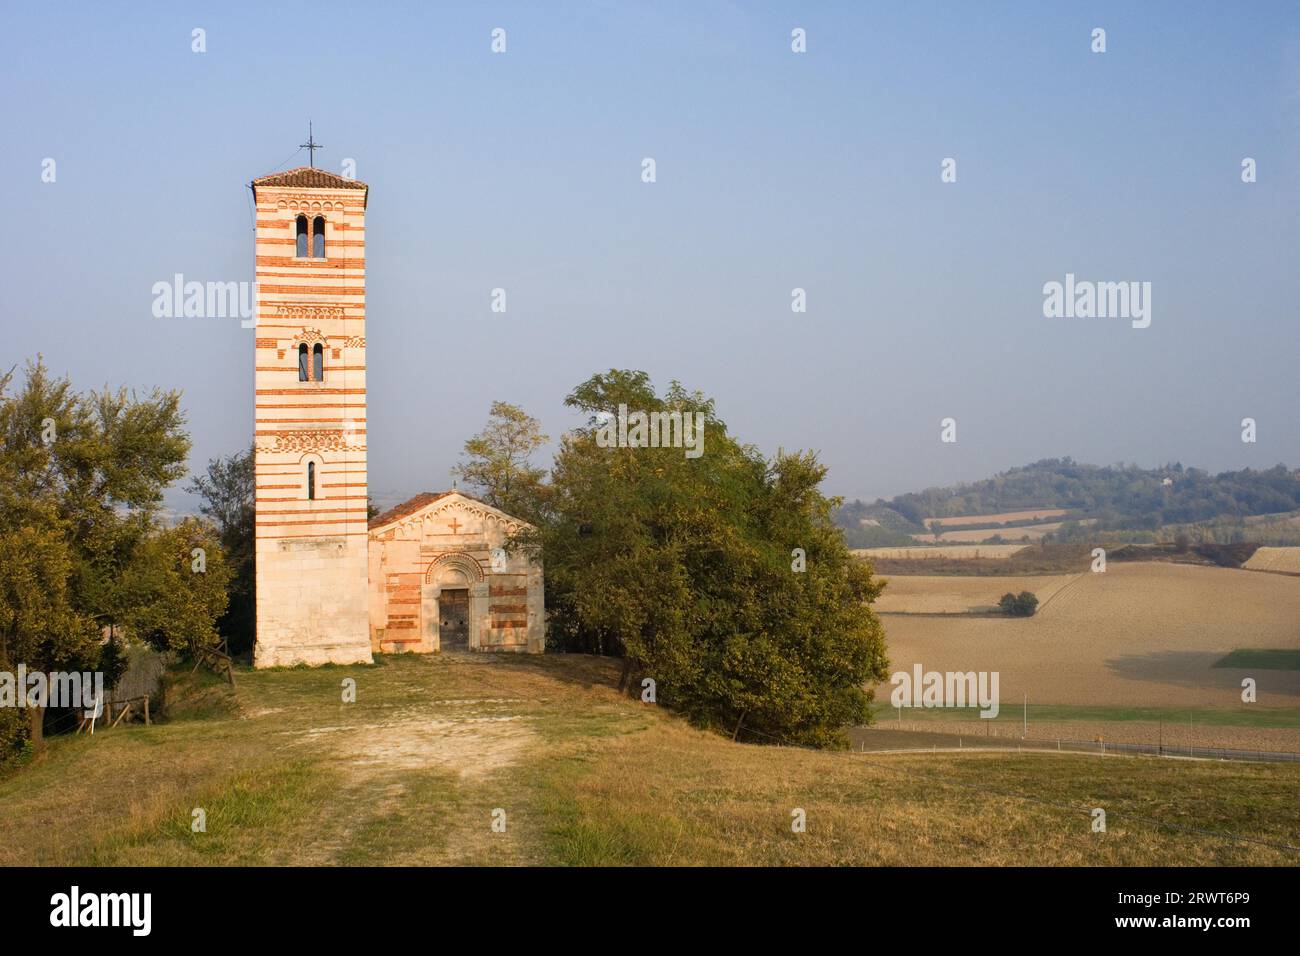 L'église romane Monferrato de campagne de San Nazario e Celso près de Montechiaro Banque D'Images